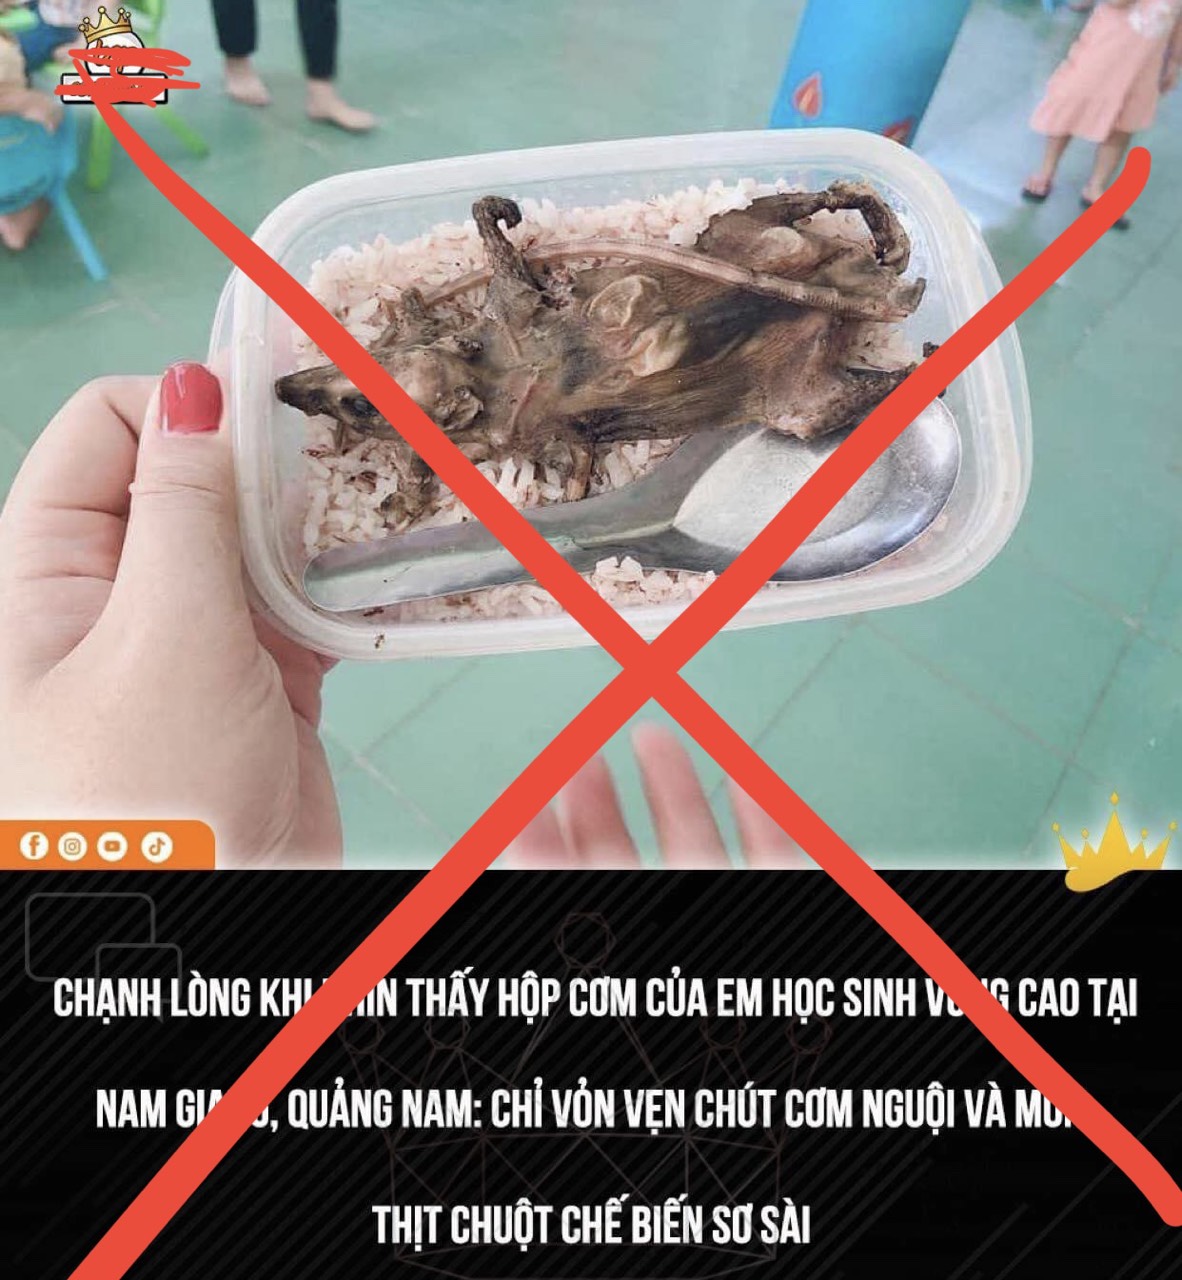 Hình ảnh bữa cơm thịt chuột bị lan truyền trên mạng xã hội